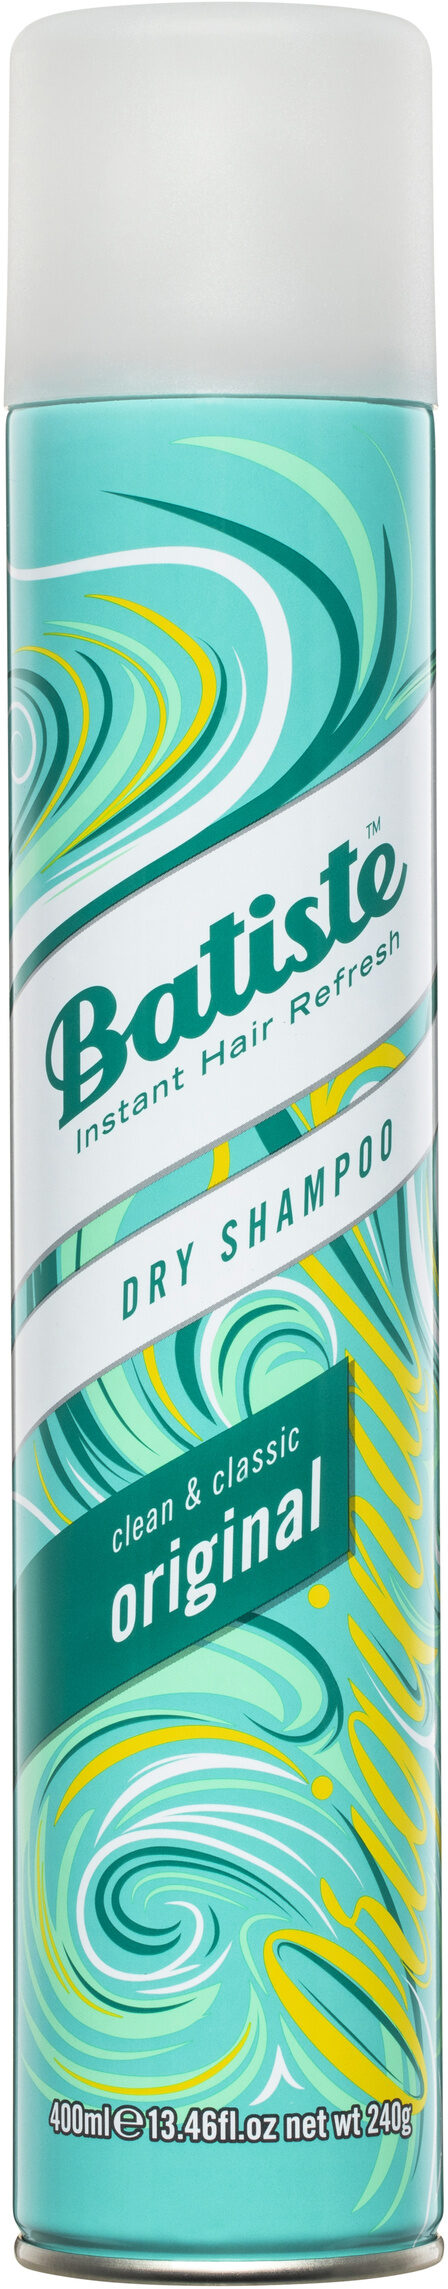 Dry Shampoo - 製品 - en